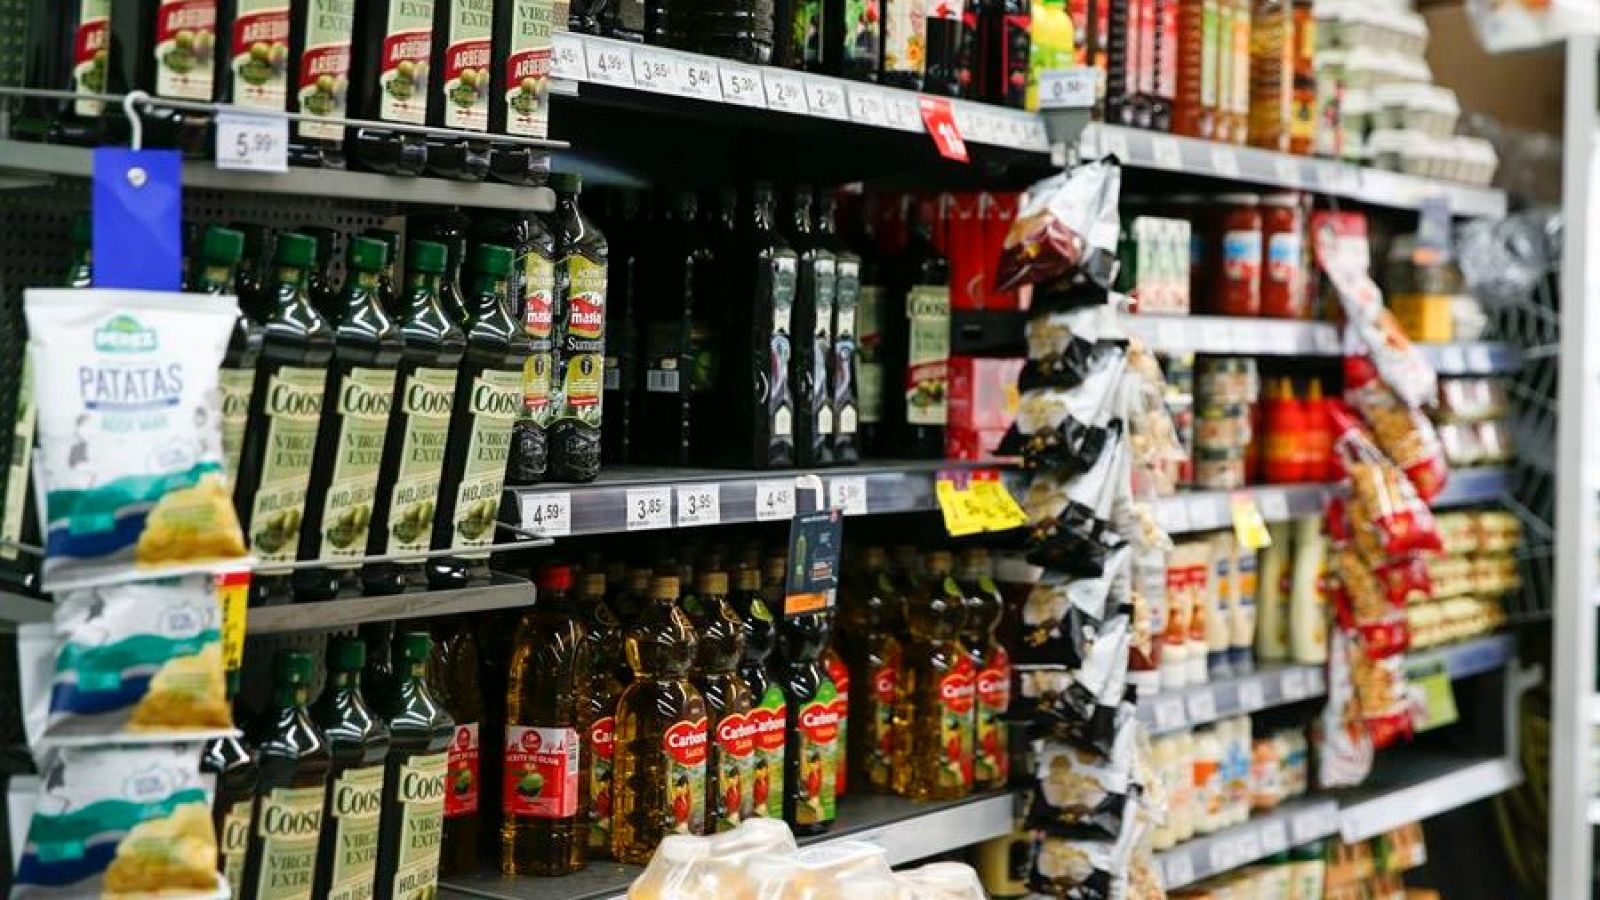 Las ventas de aceite de oliva caen un 31%: "Consumo lo justo porque hay que guisar"